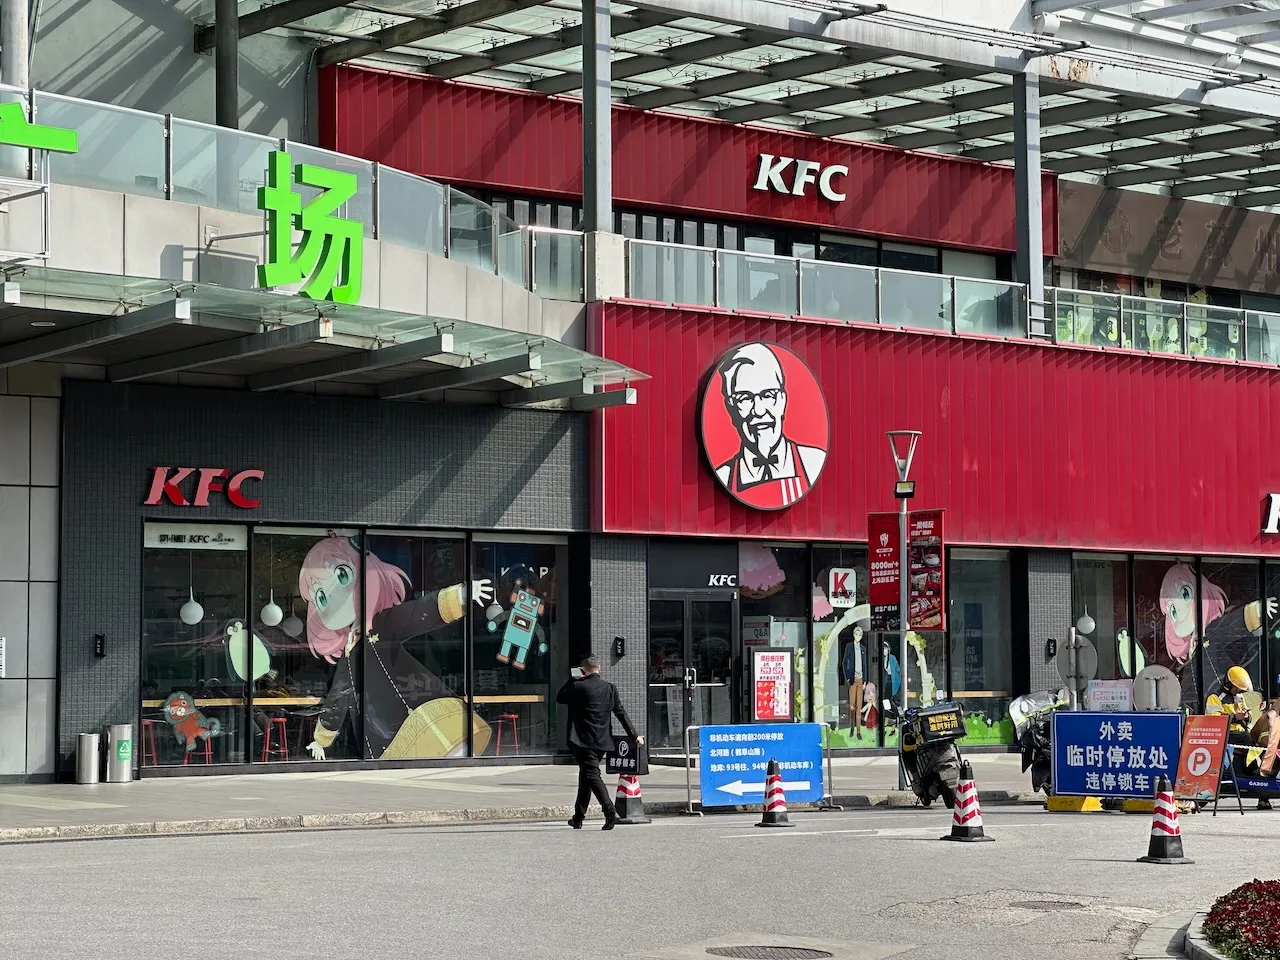 A Spy x Family themed KFC in Suzhou